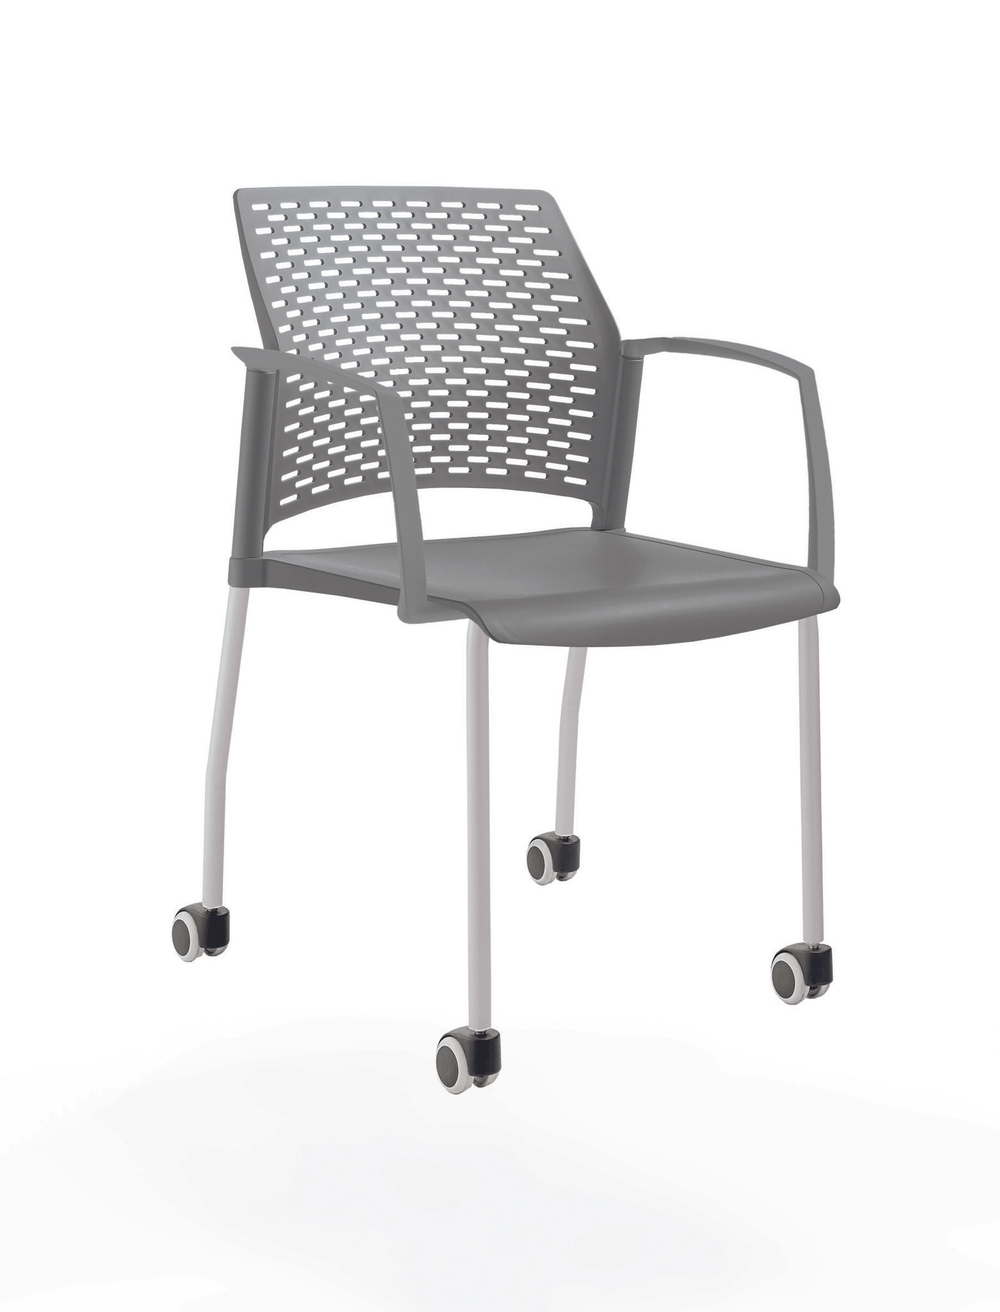 стул Rewind на 4 ногах и колесах, каркас серый, пластик серый, с закрытыми подлокотниками, сиденье и спинка без обивки